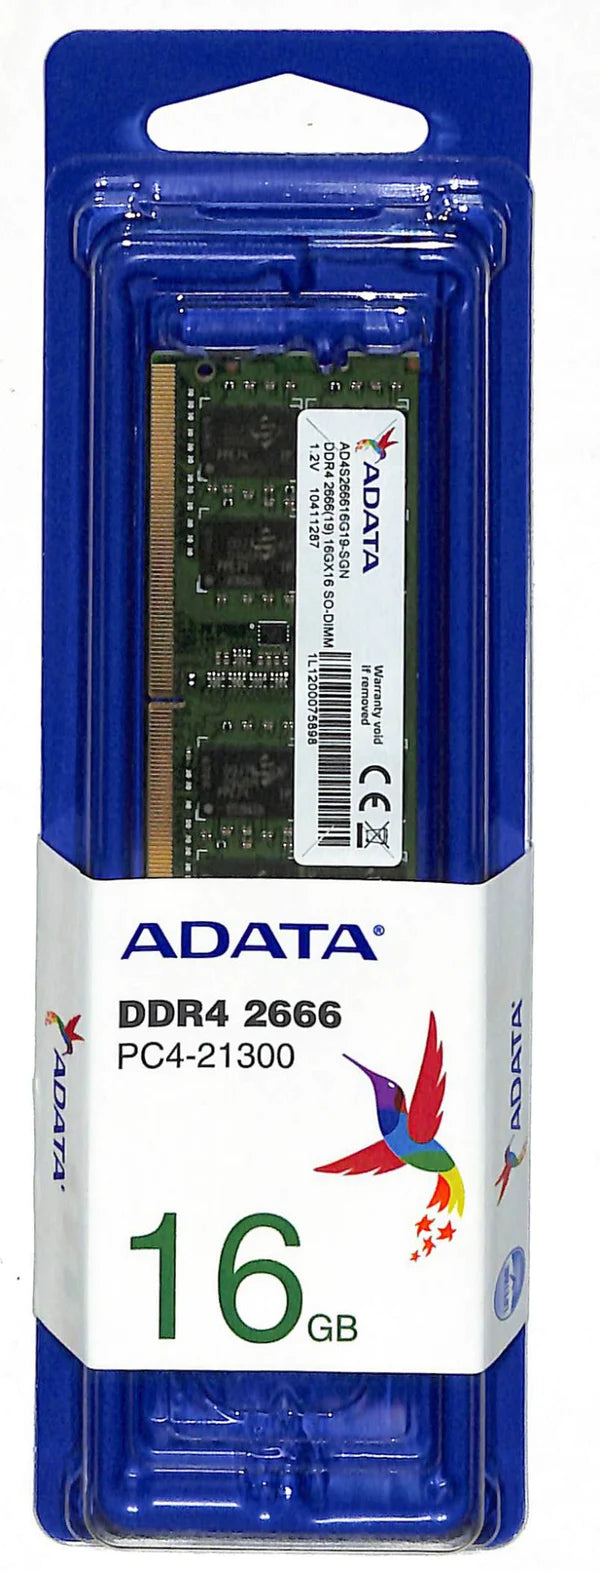 Adata DDR4 PC2666 LV